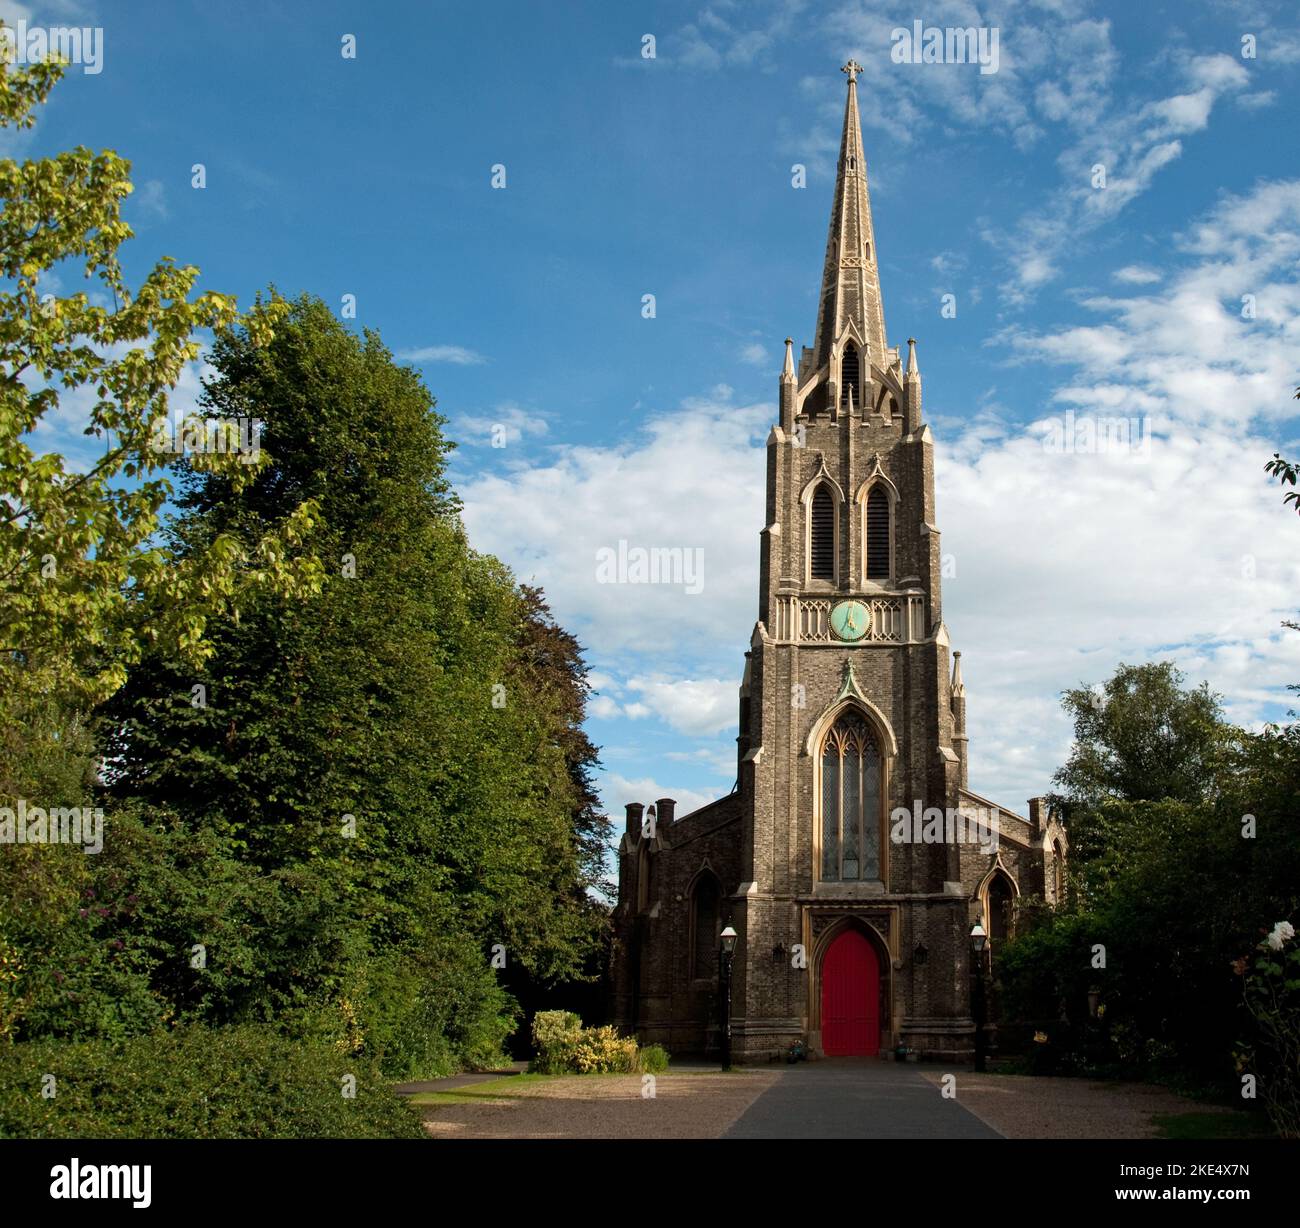 St Michael's Church, Highgate, Londra, Regno Unito. La chiesa di San Michele (in stile neogotico) è la chiesa più alta di Londra, in quanto Highgate è una delle più alte Foto Stock